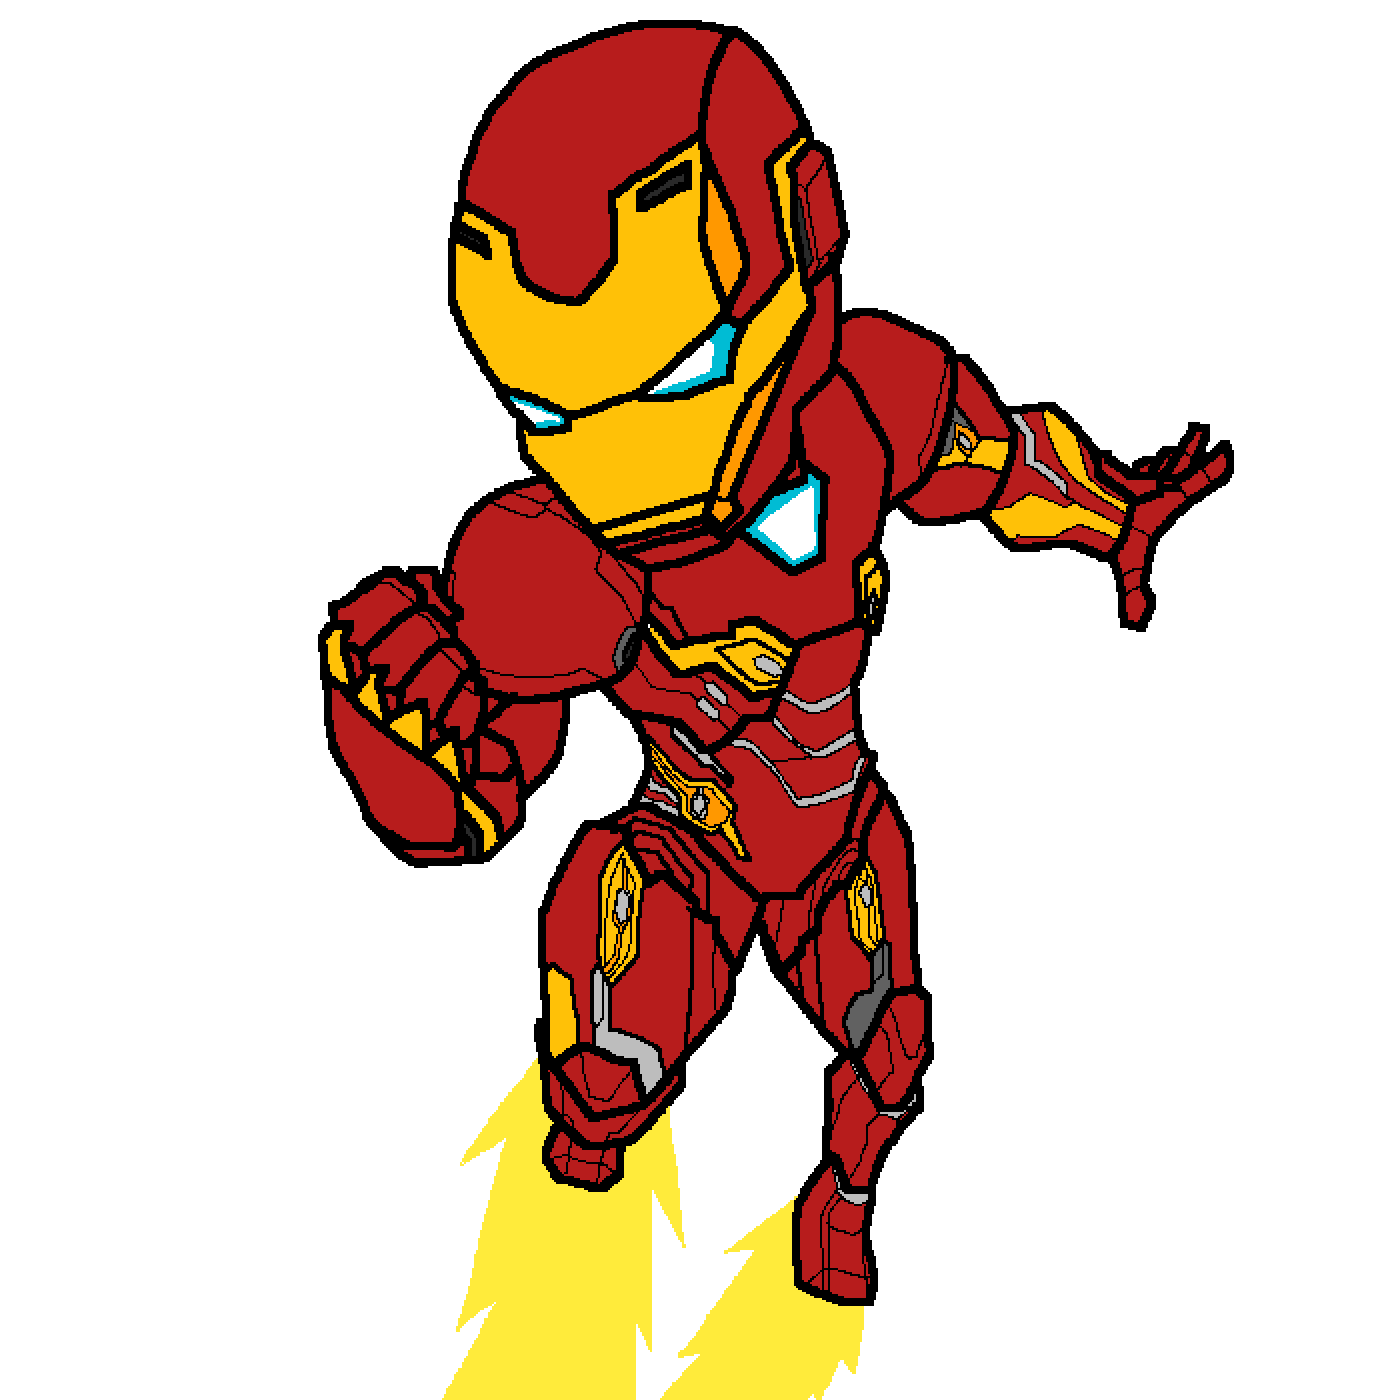 Chibi Iron Man PNG Download Free PNG Image